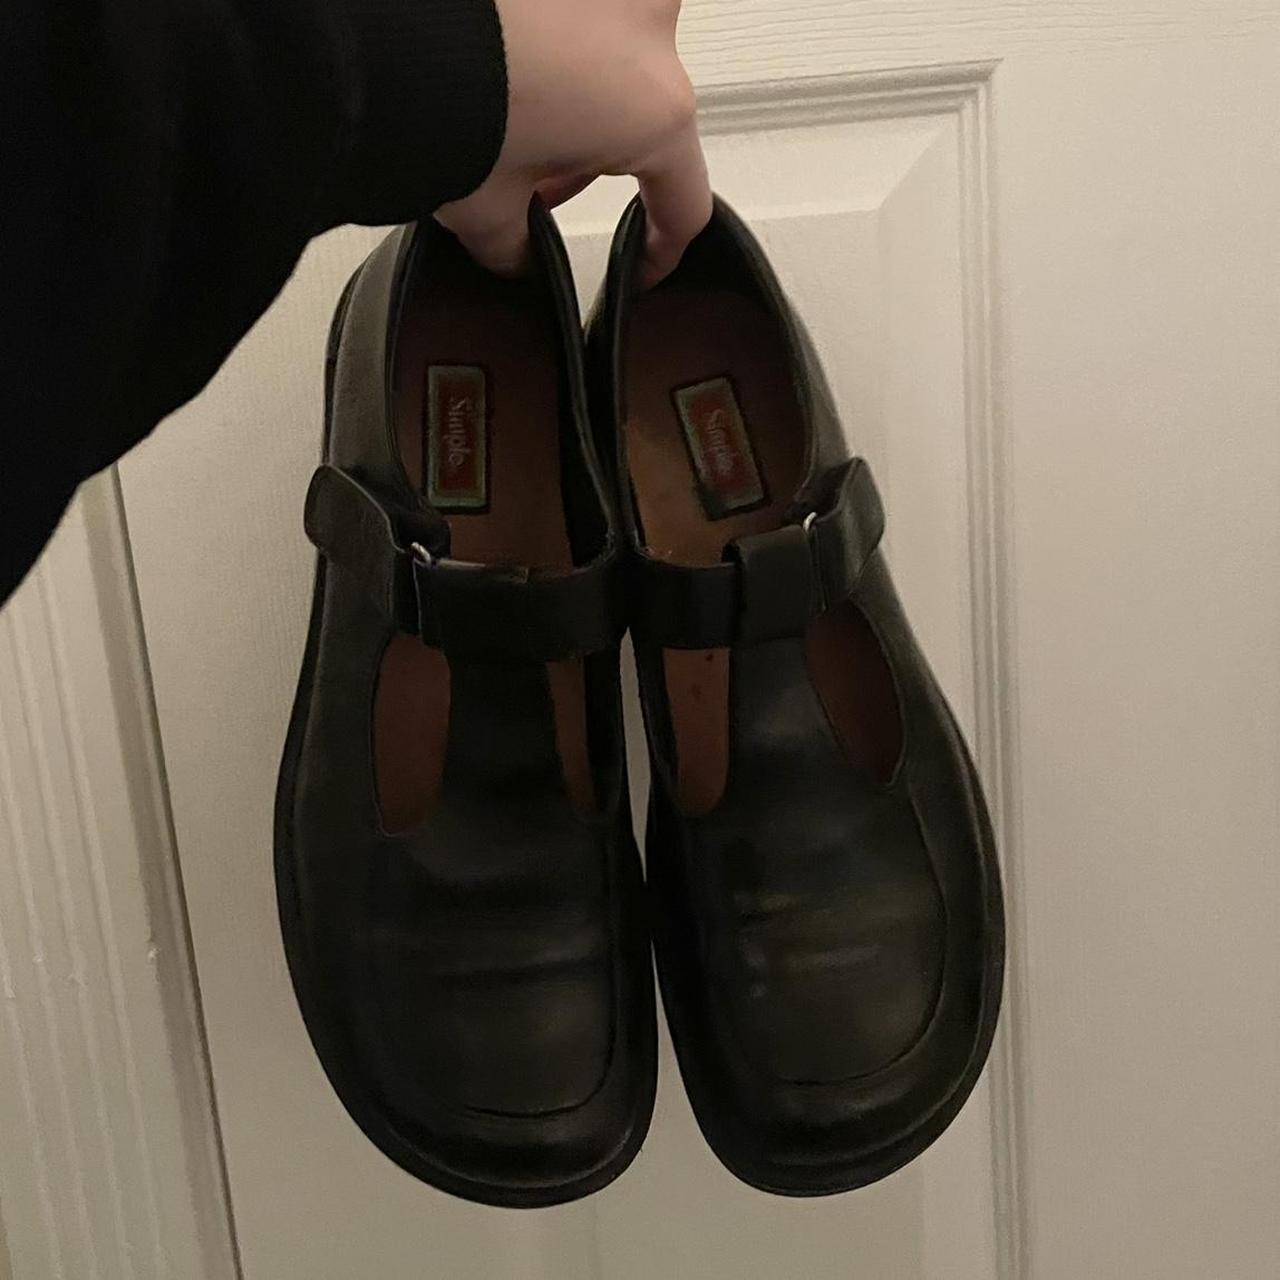 Dr. Martens Women's Black Footwear